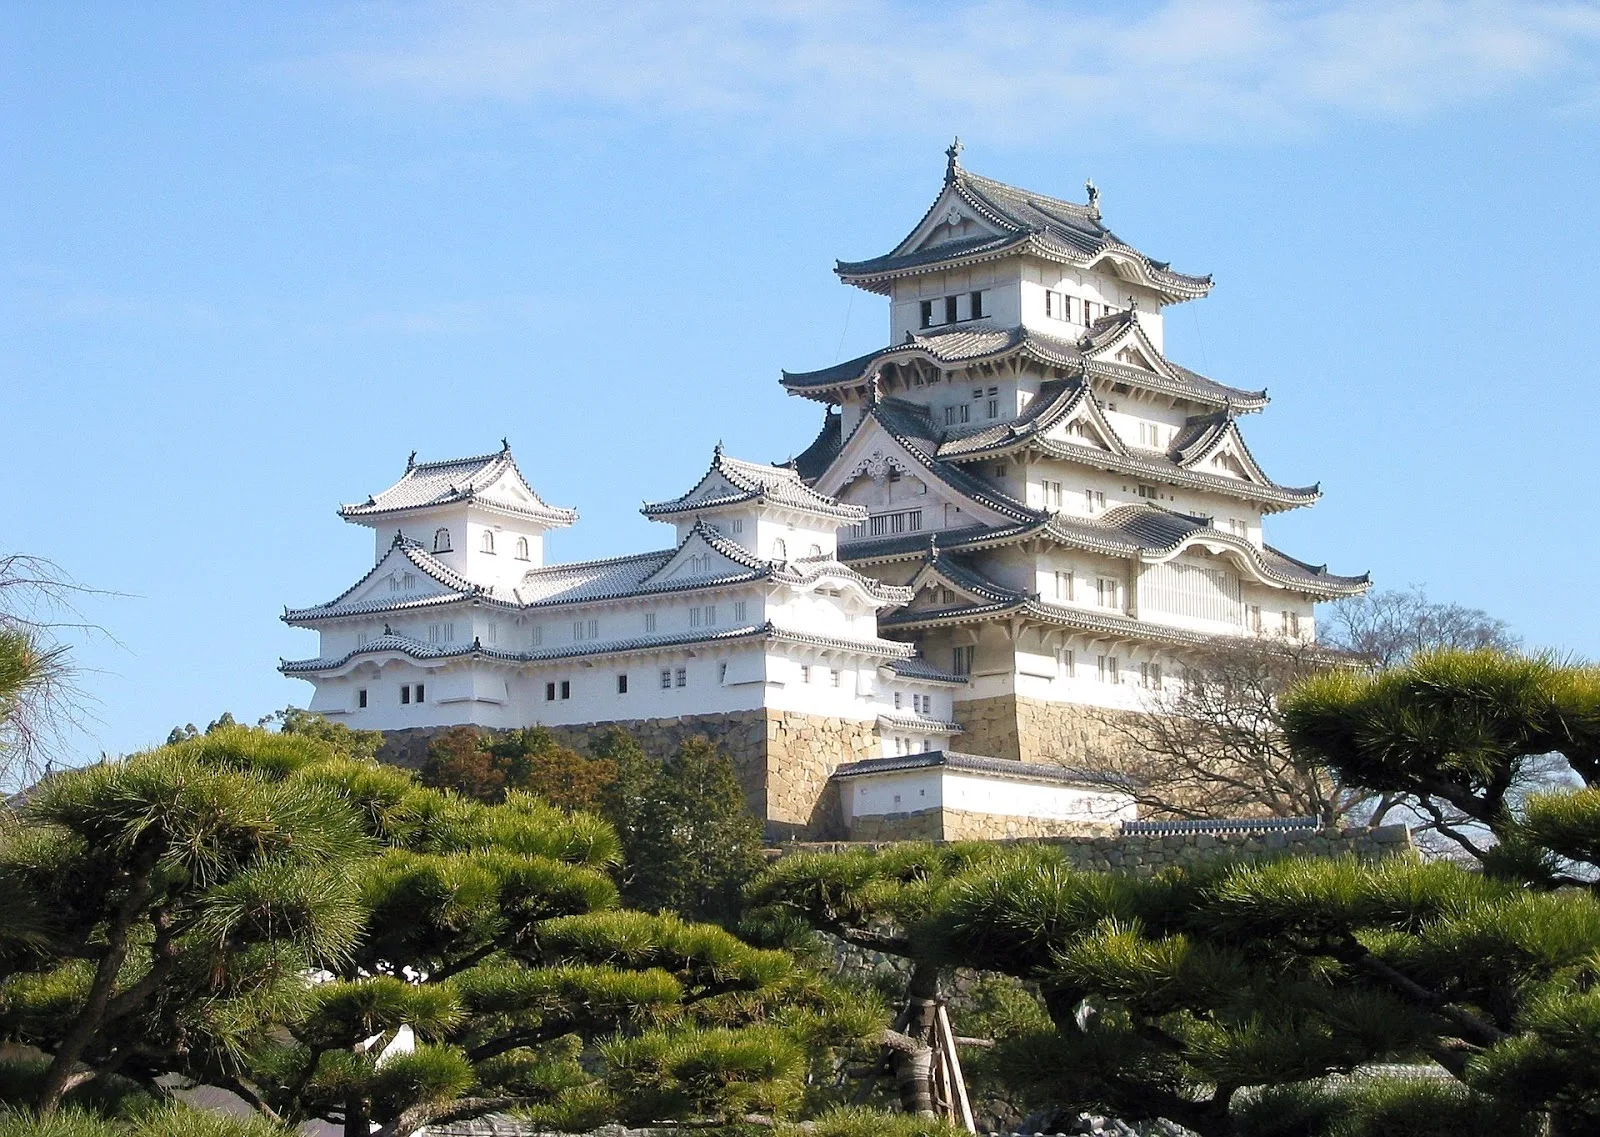 日本-神戶-神戶景點-推薦-姬路城-Himeji Castle-自由行-旅遊-觀光-神戶景點地圖-神戶必去景點-神戶一日遊-二日遊-半日遊-路線-神戶行程-神戶親子景點-Kobe